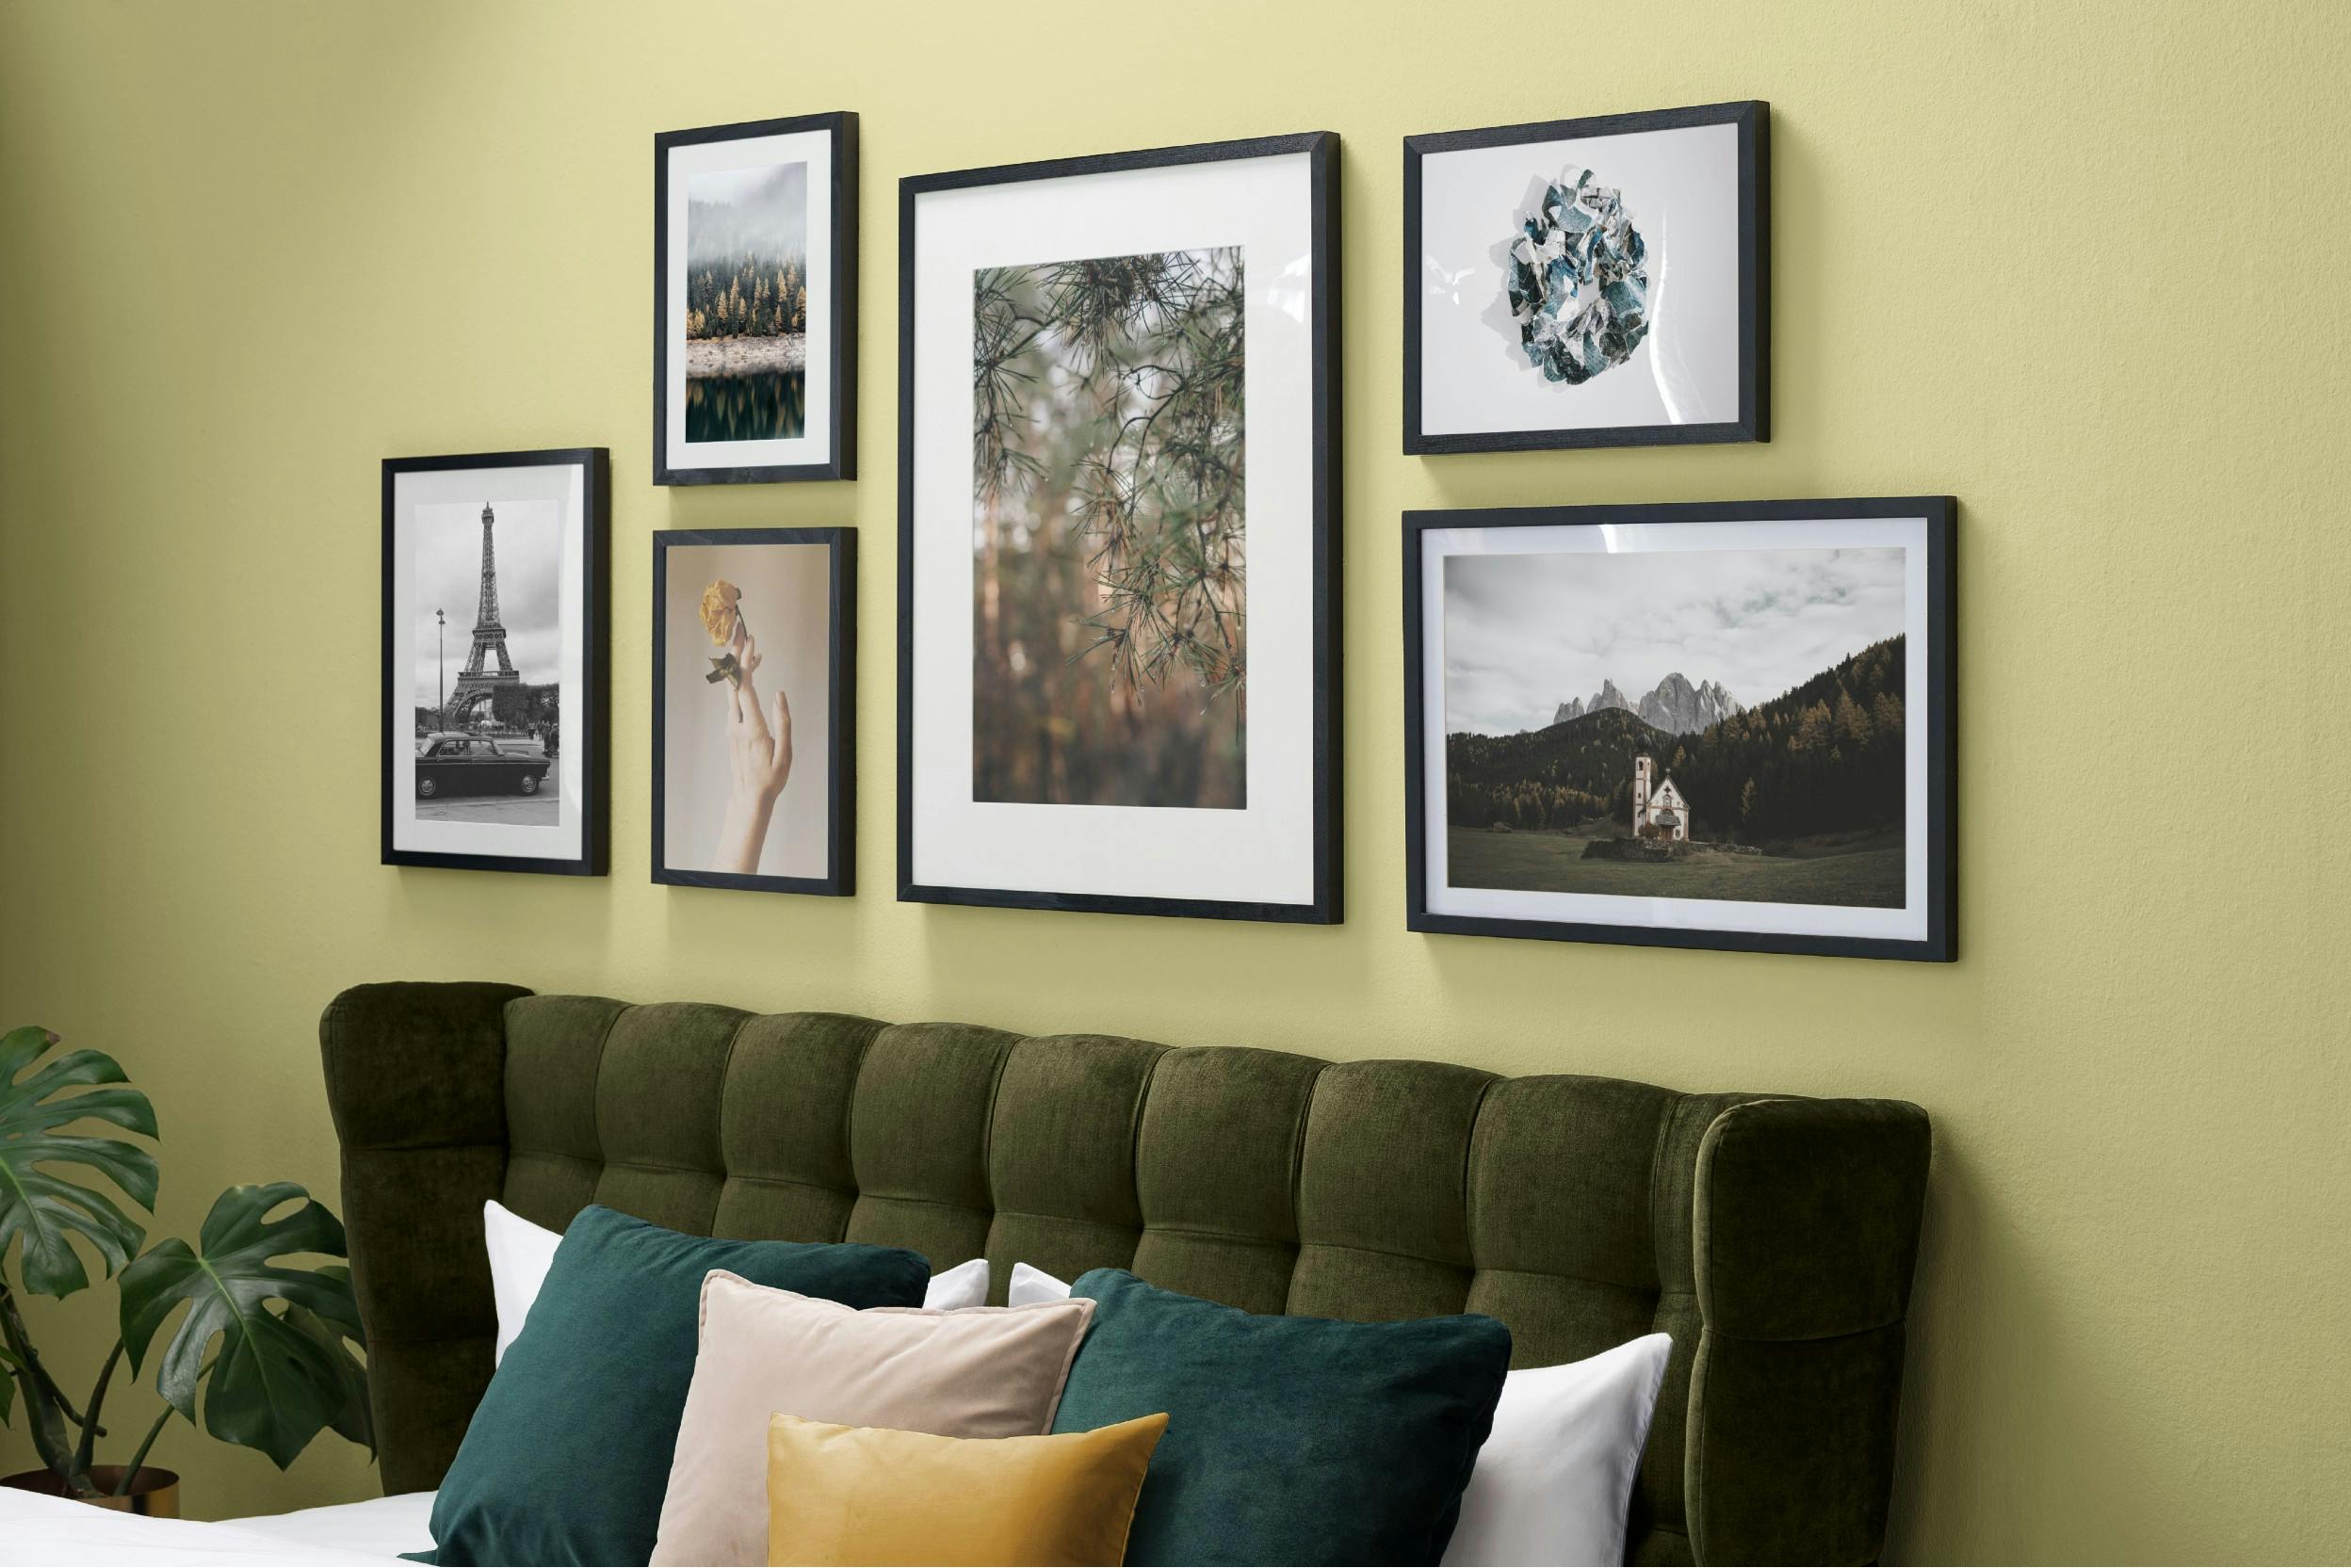 Wand met afbeeldingen die in perfecte harmonie zijn opgehangen